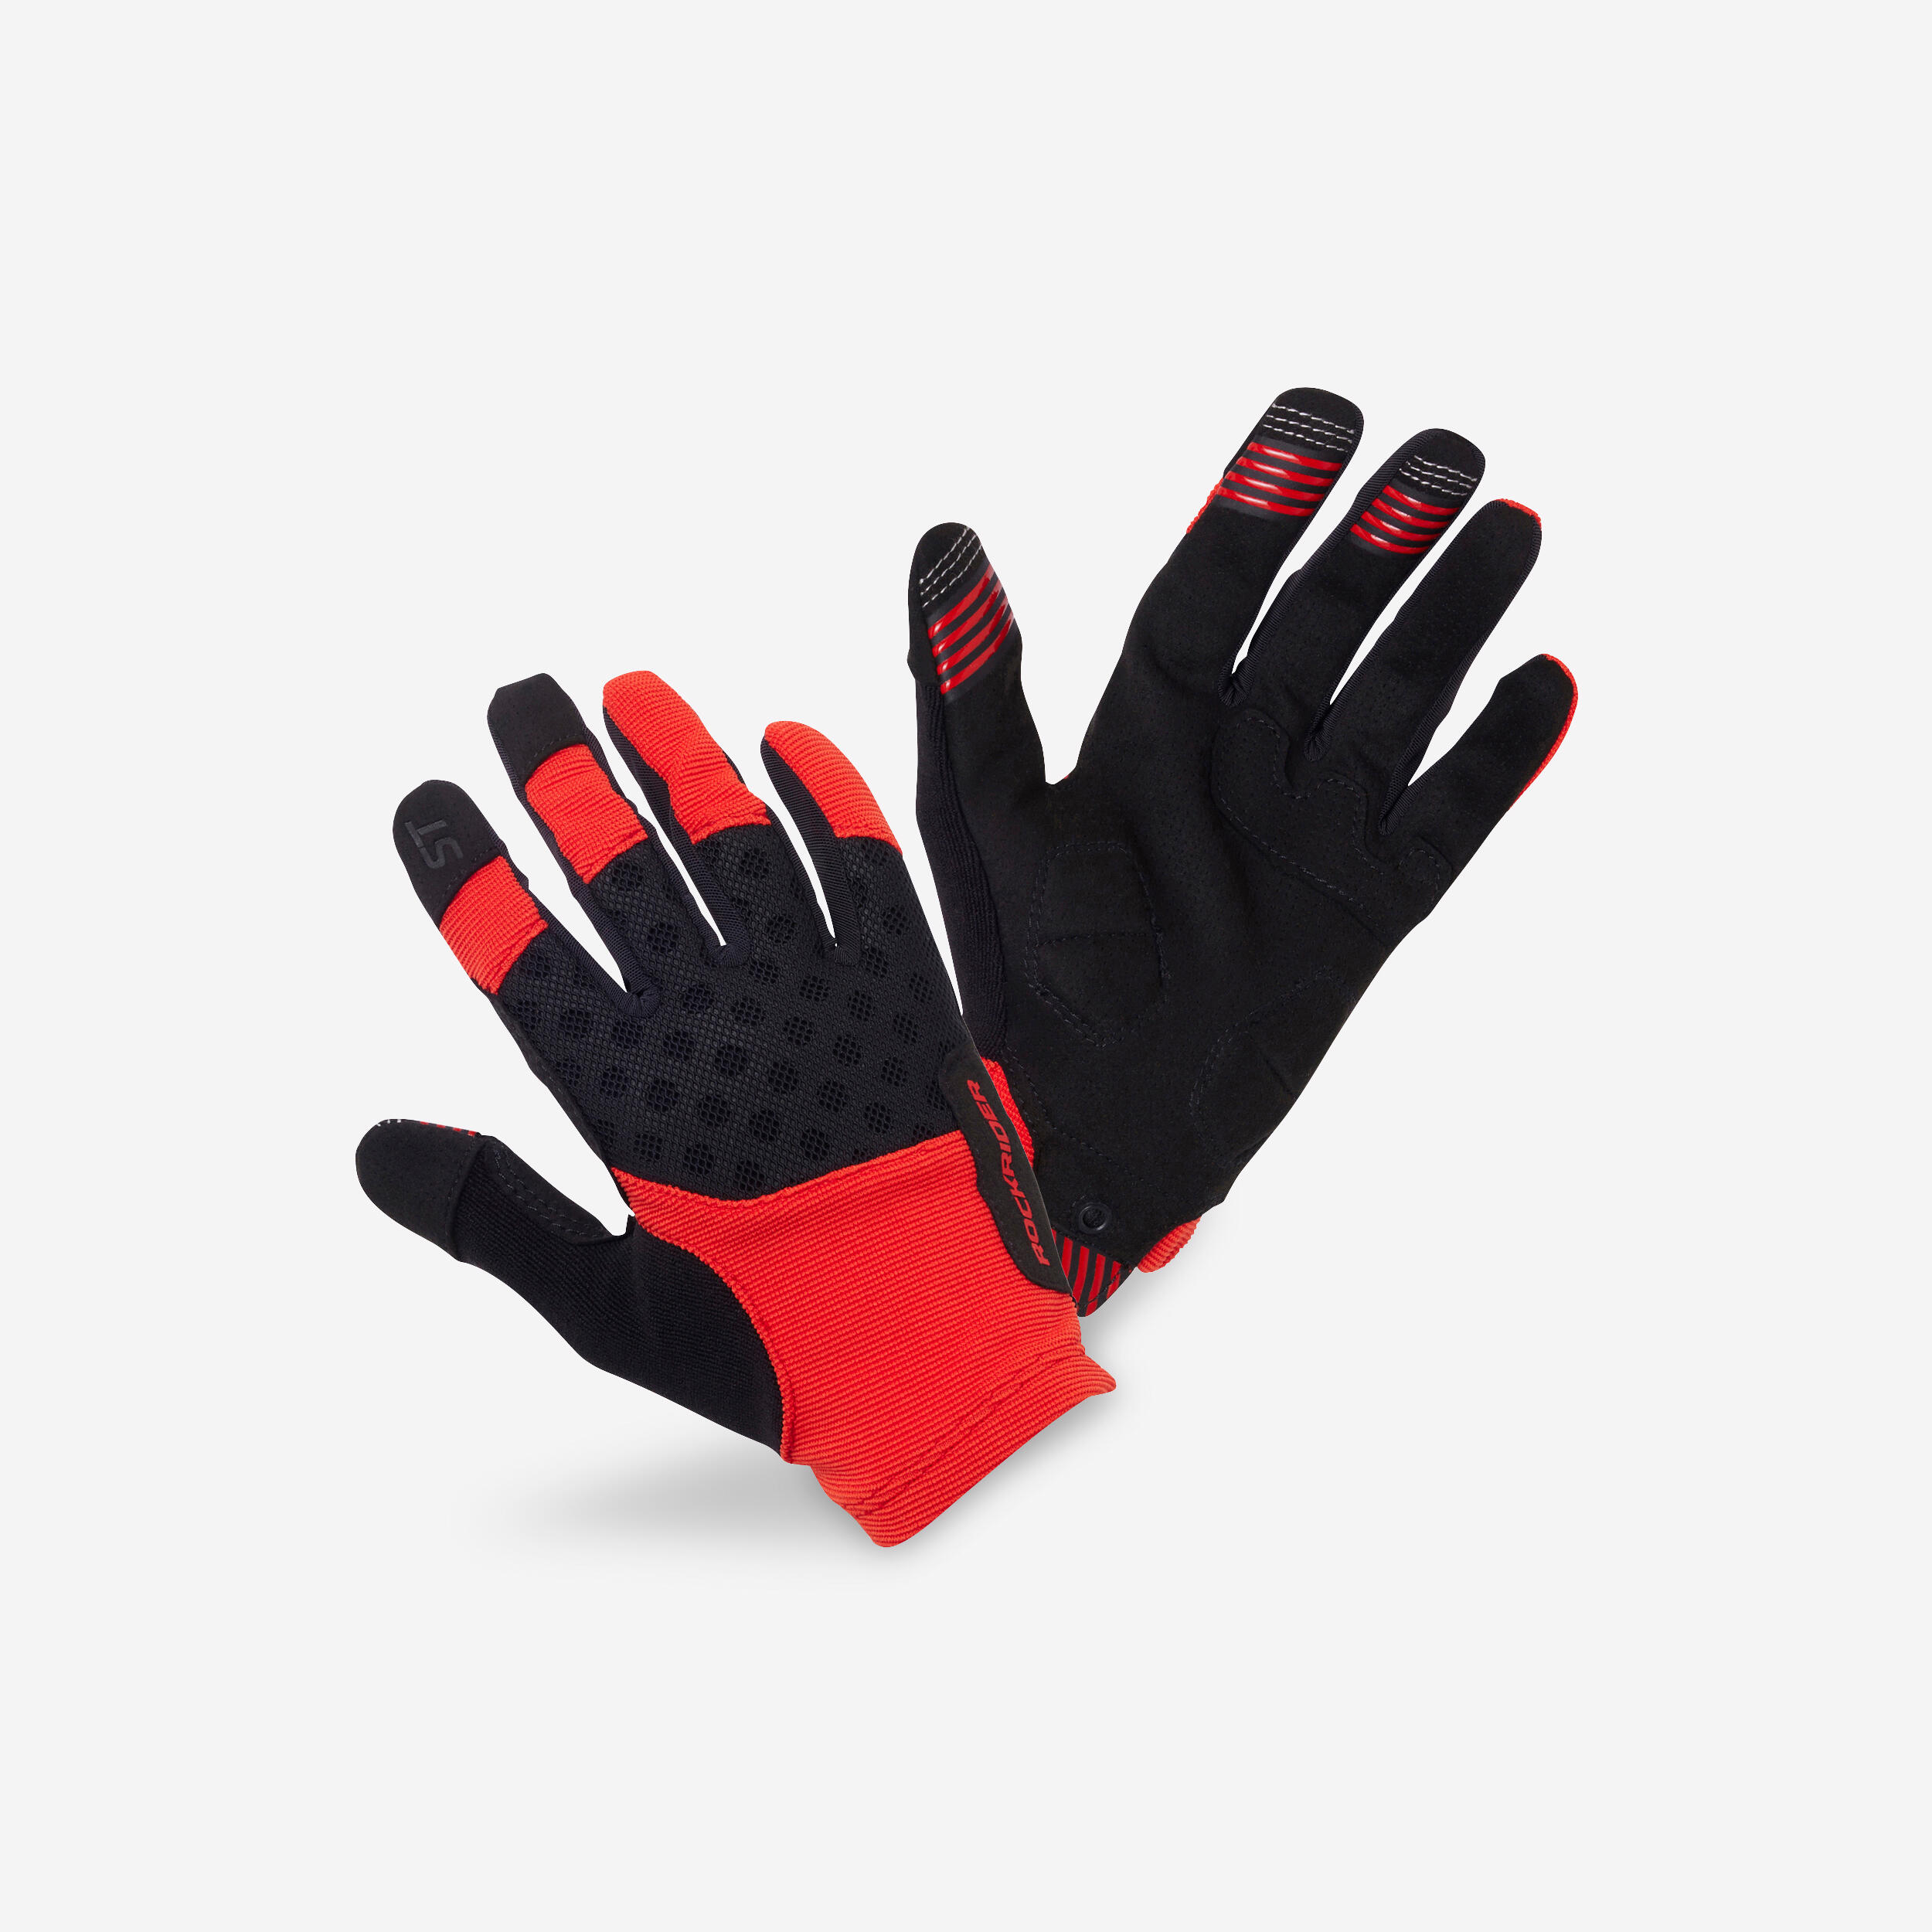 ROCKRIDER Mountain Biking Gloves ST 500 - Red